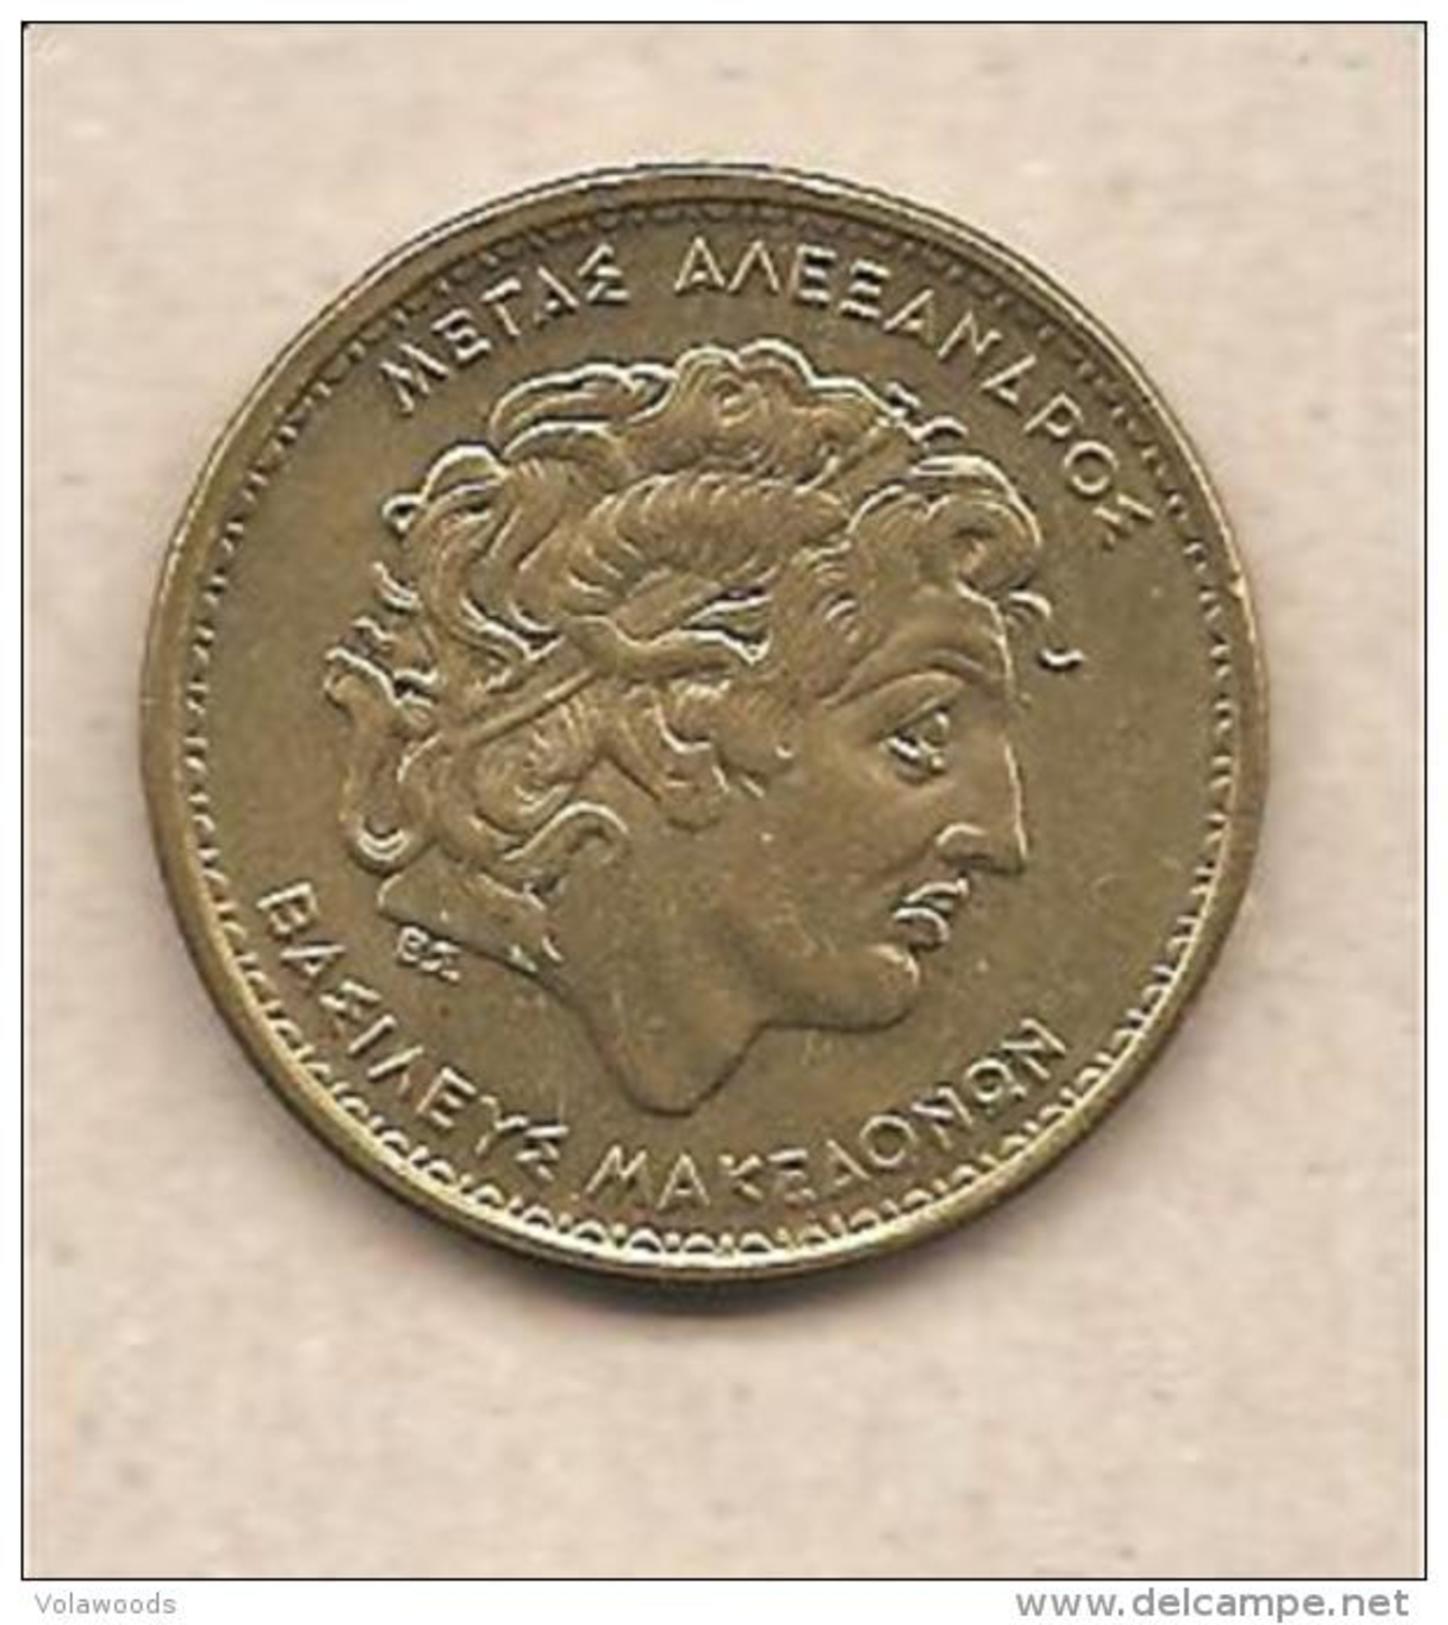 Grecia - Moneta Circolata Da 100 Dracme "Alessandro Magno" Km159 - 1992 - Grecia